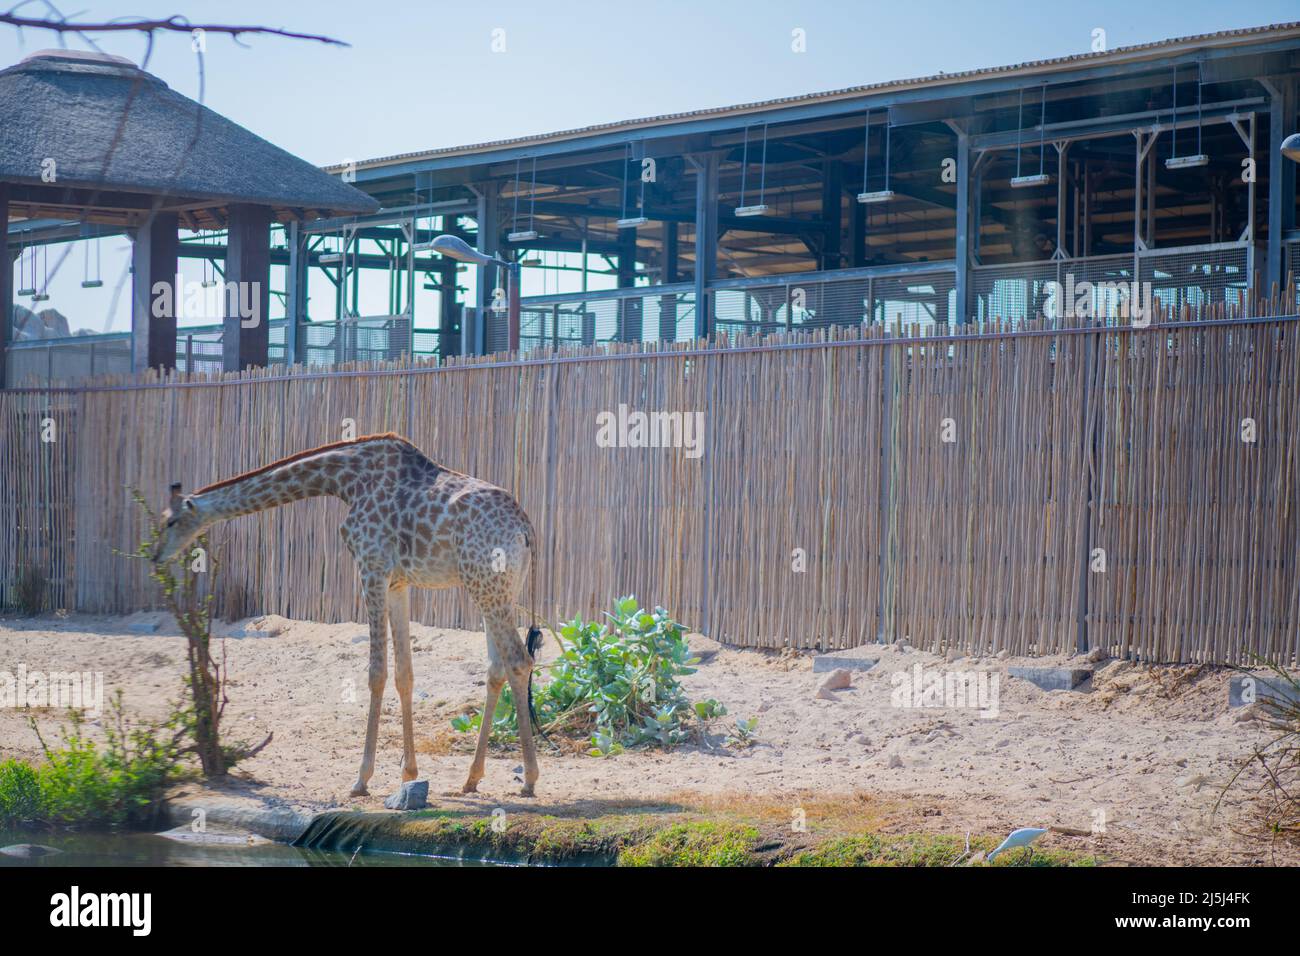 giraffe vive nello zoo di dubai Foto Stock